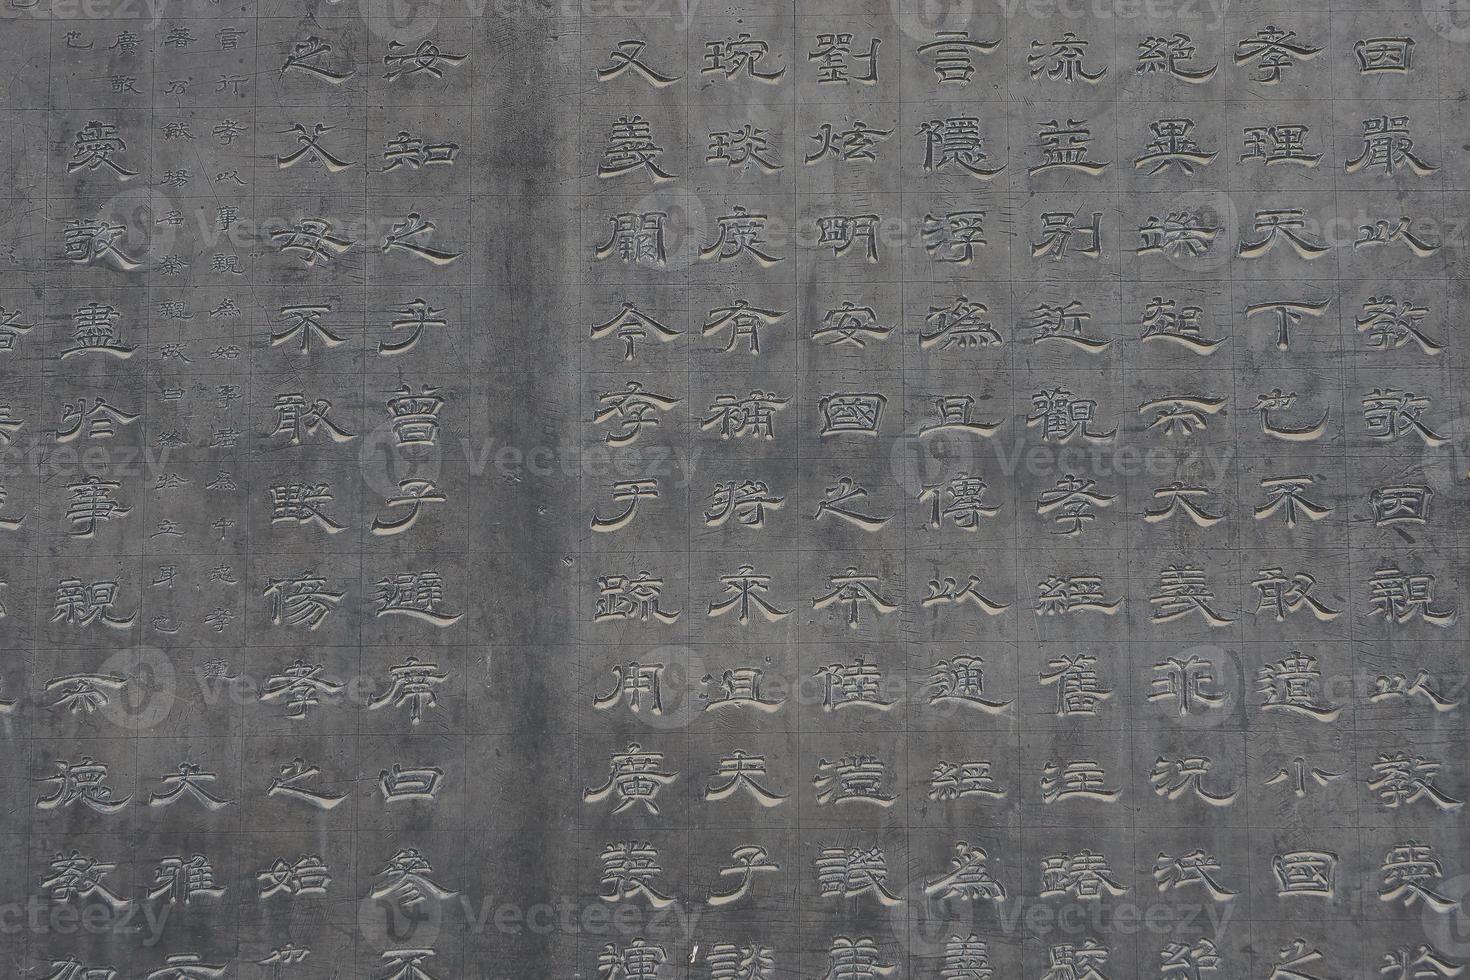 kalligrafie stenen tabletten in xian forest of stone steles museum, china foto